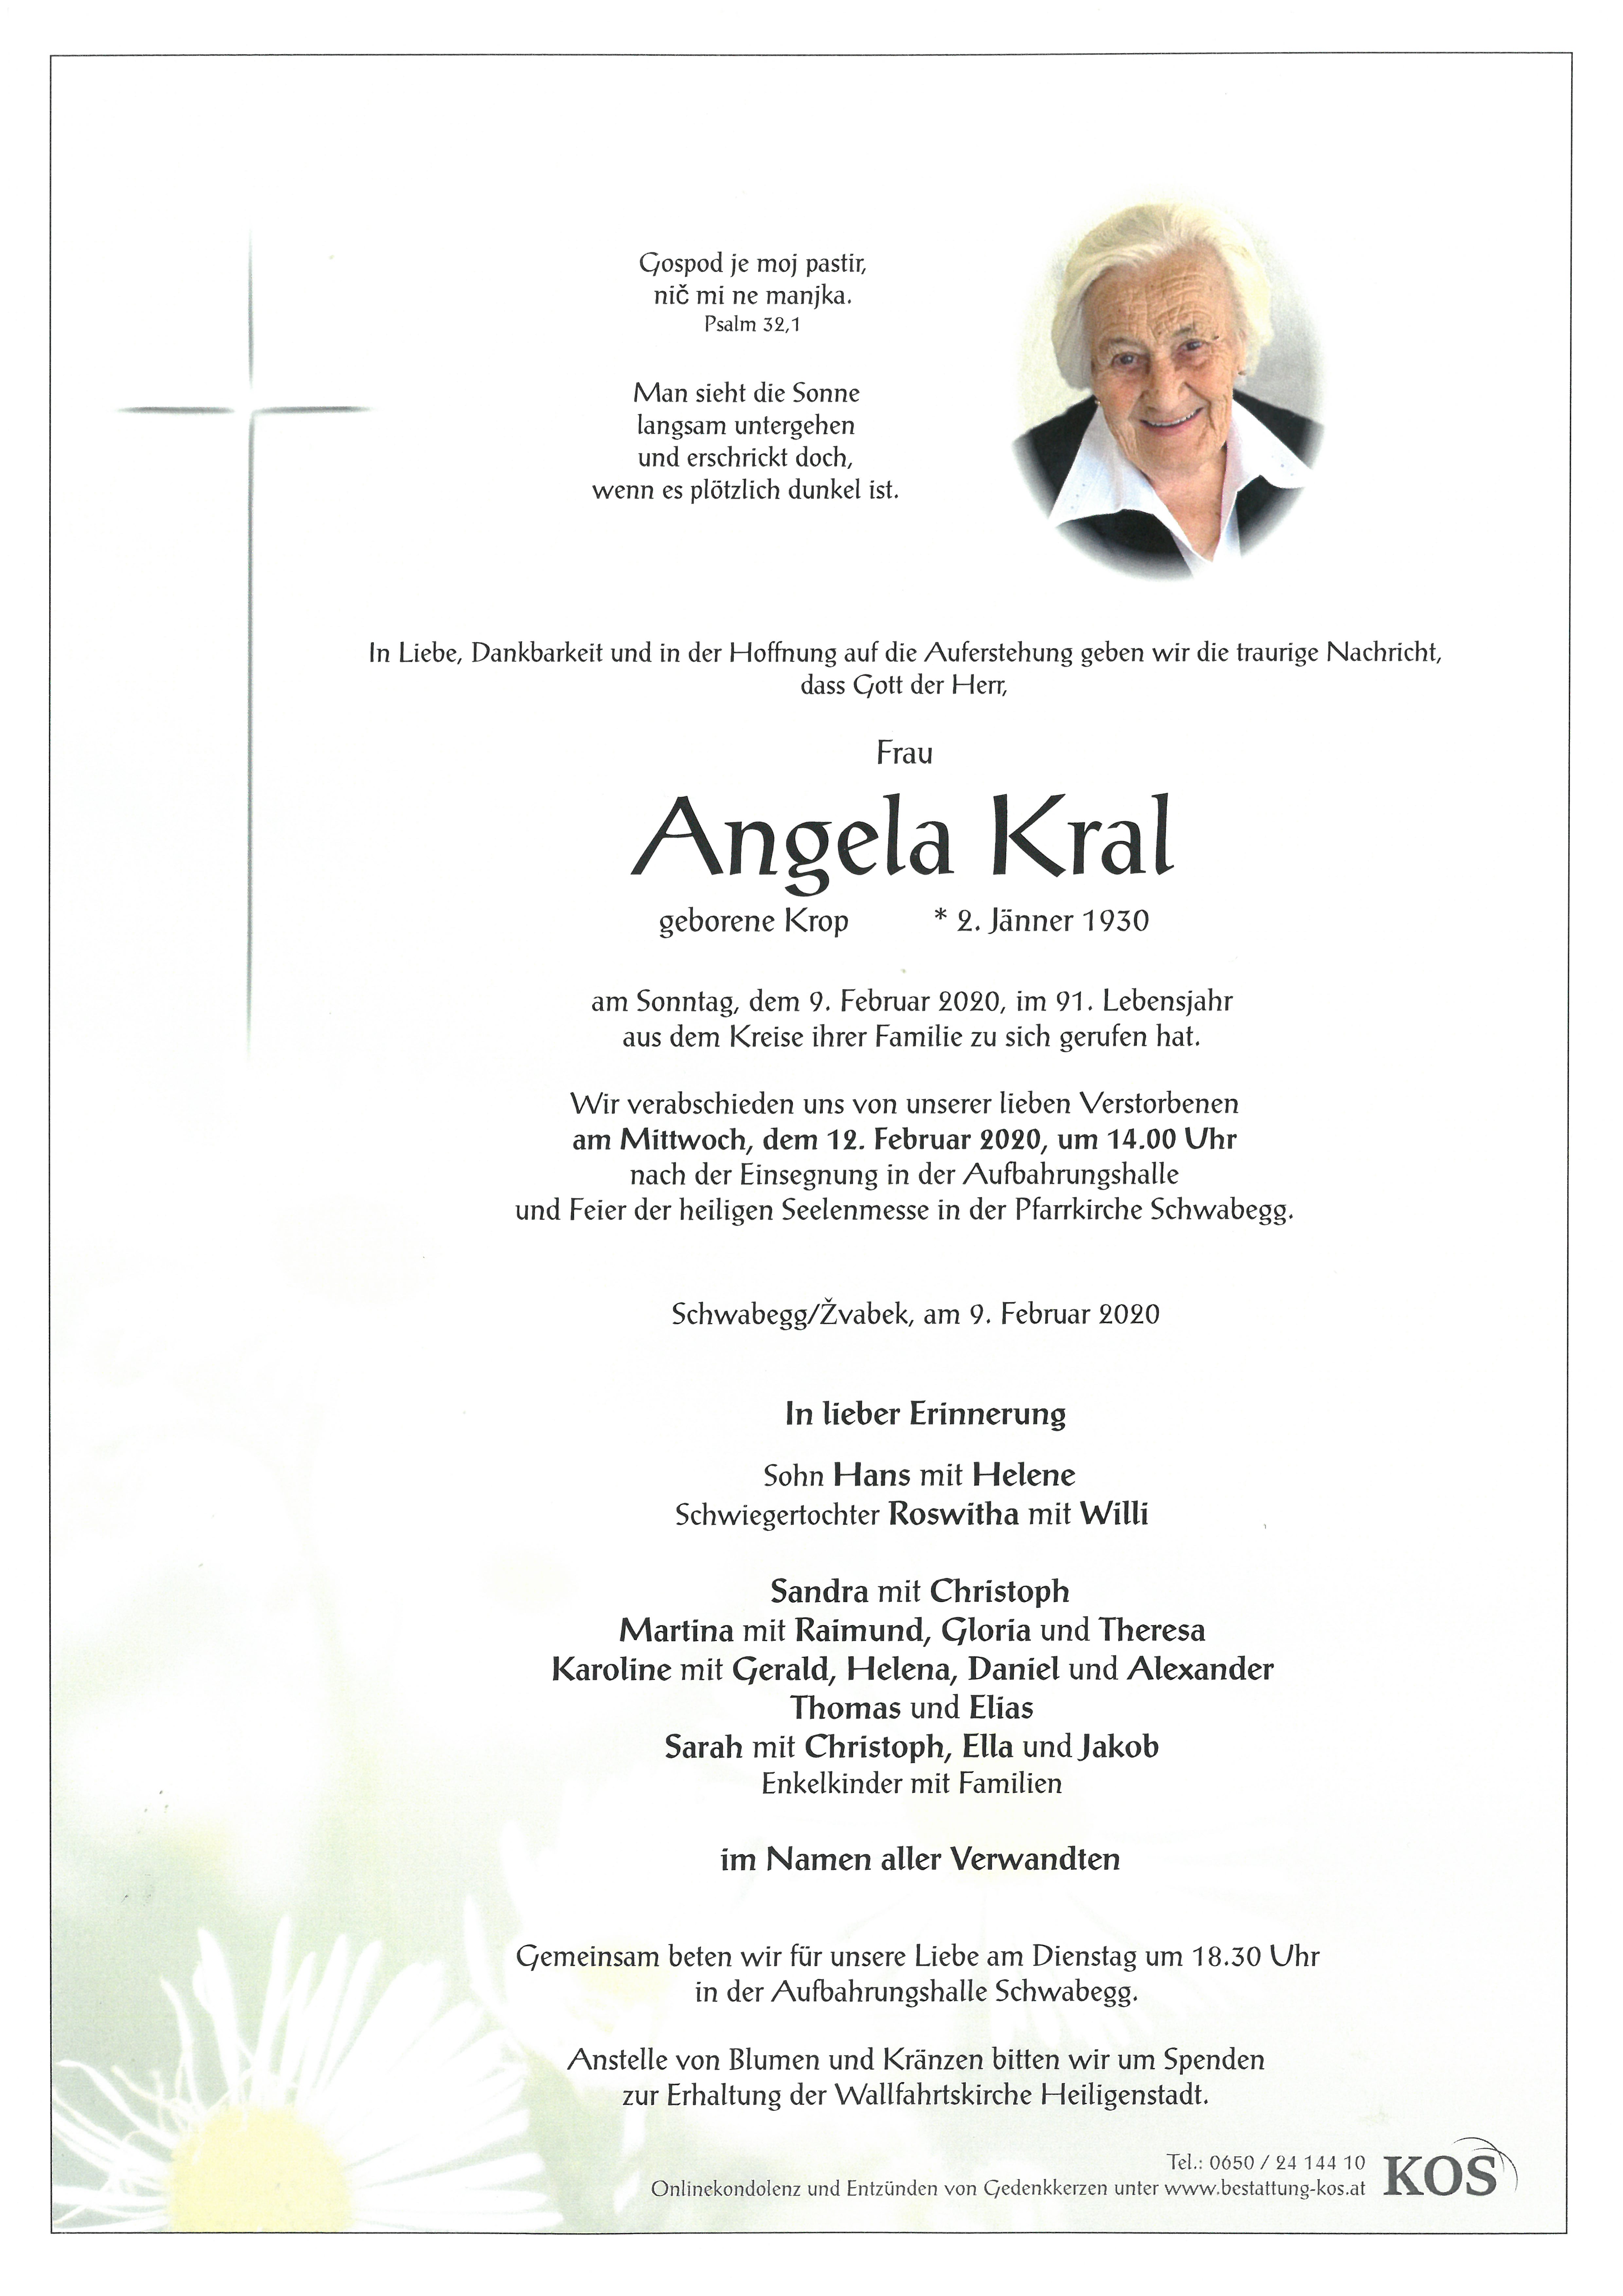 Angela Kral